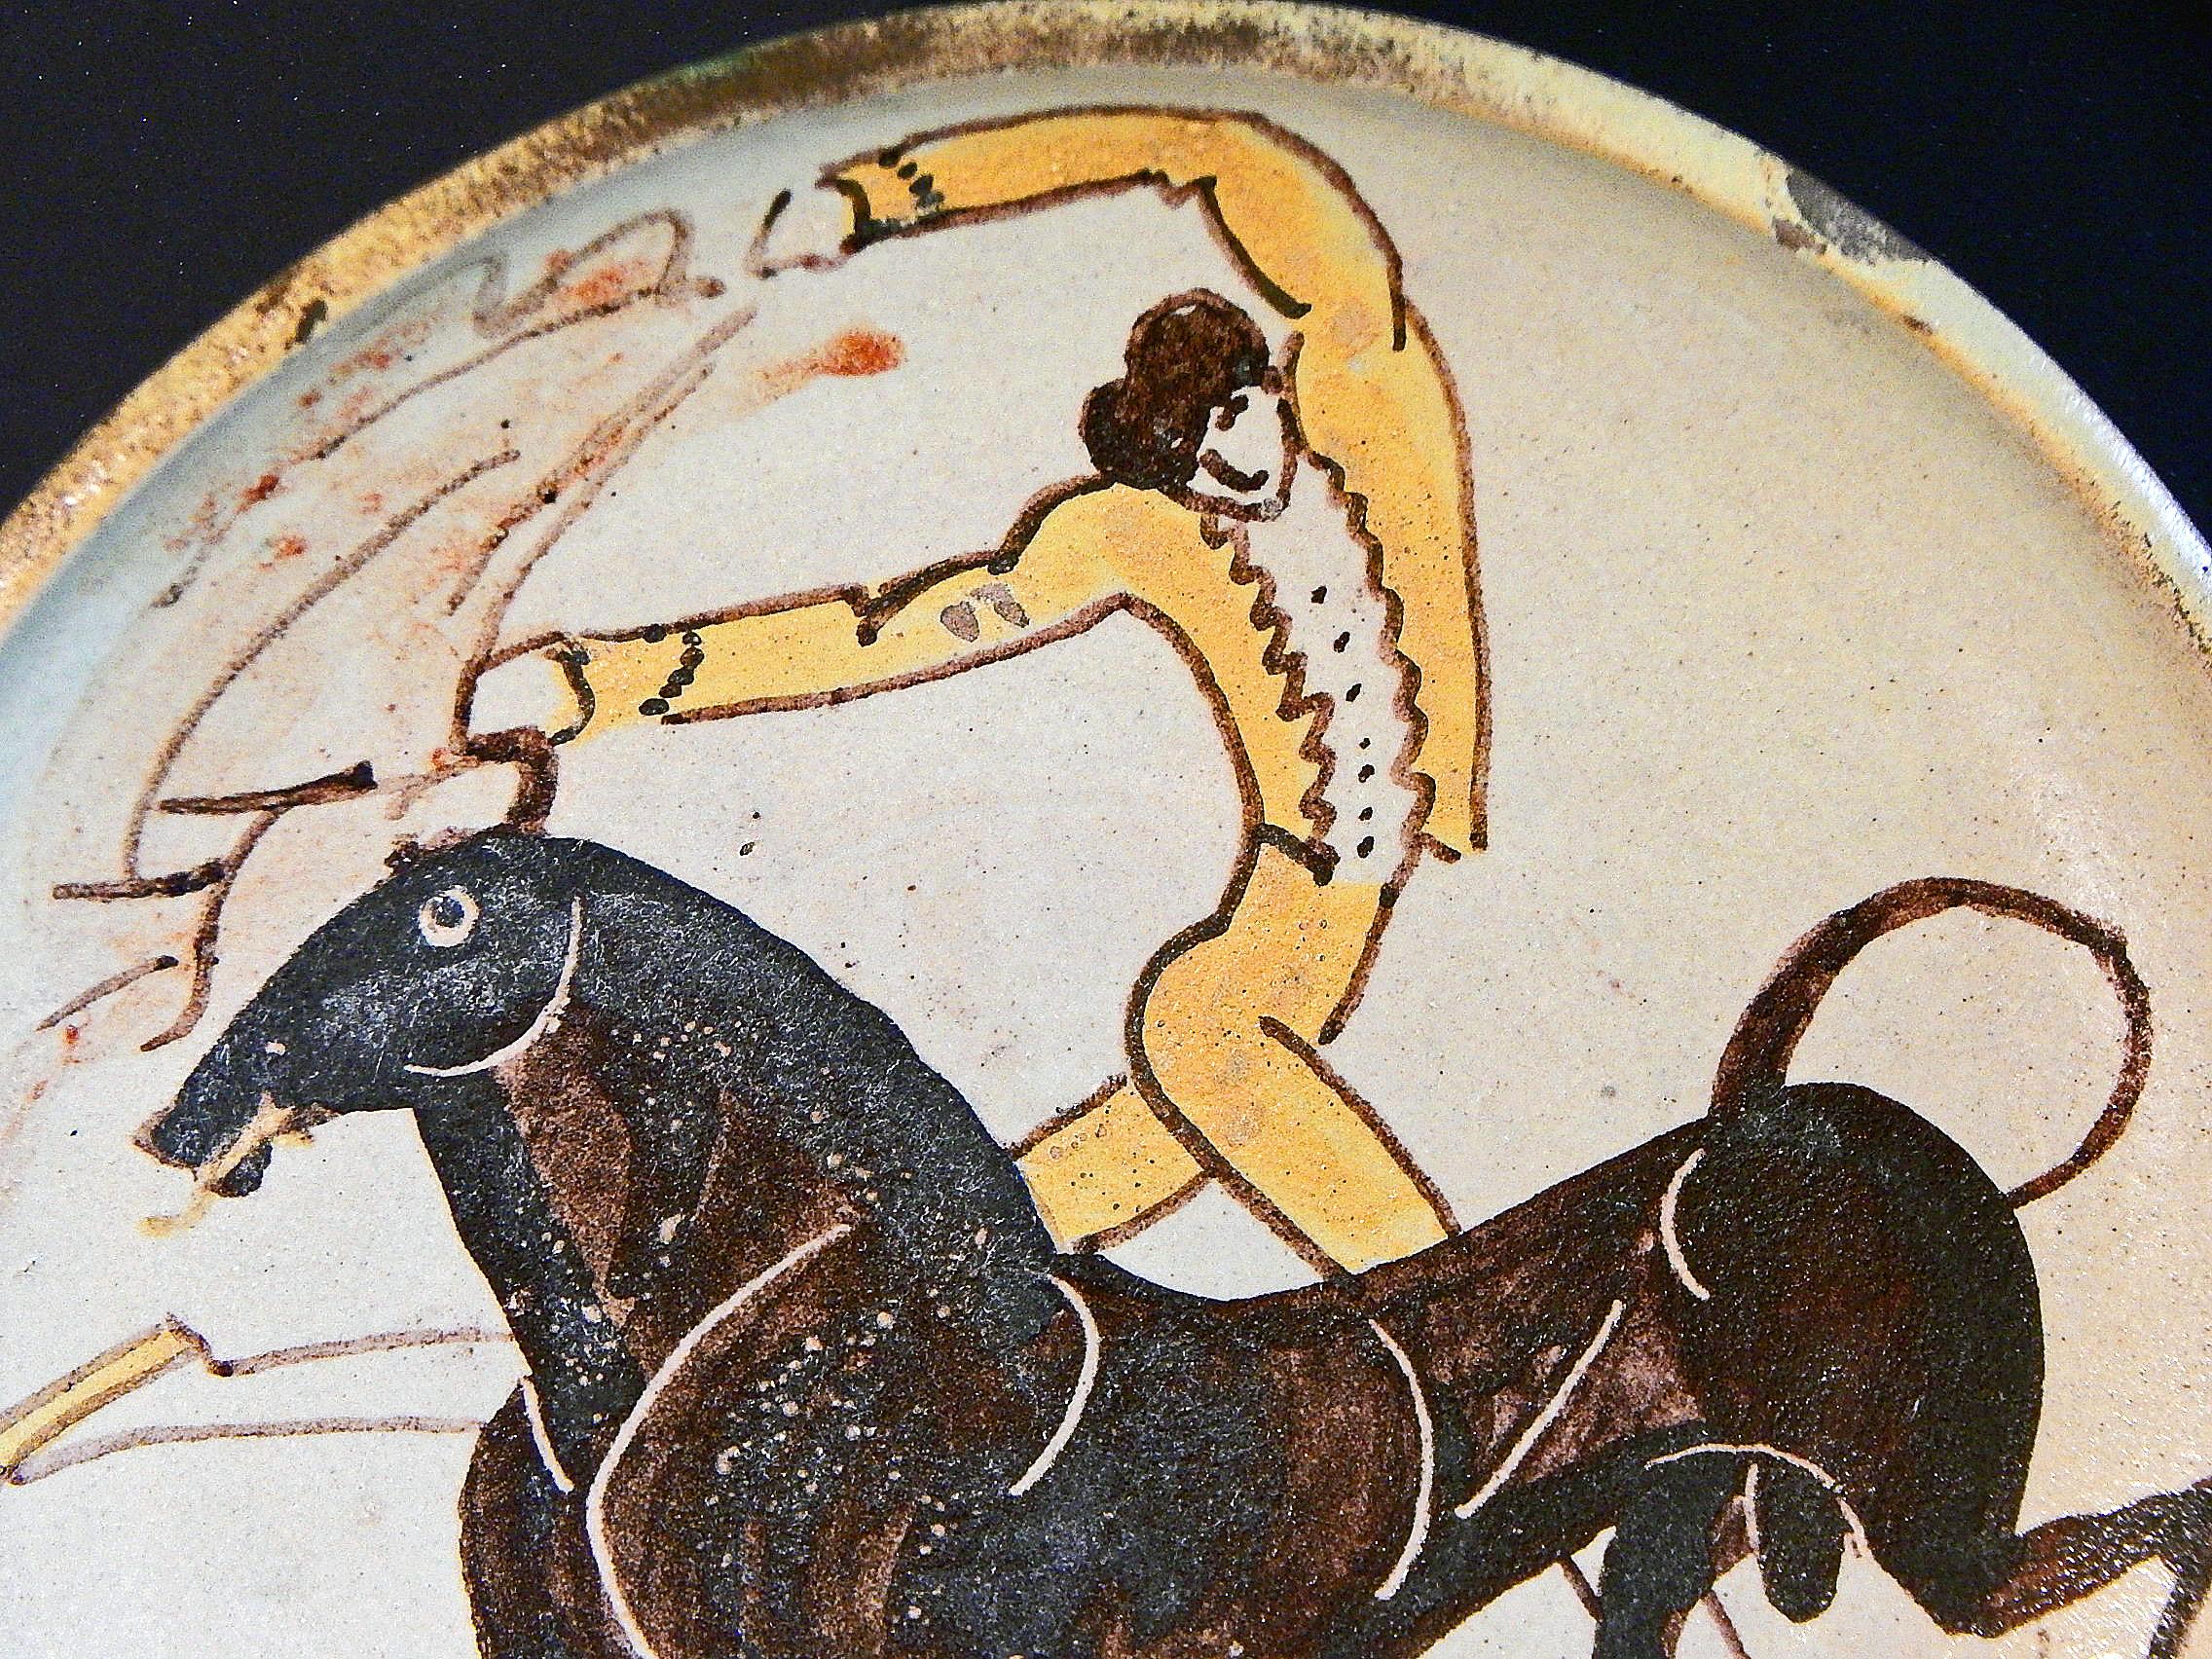 Exemple coloré et brillant de l'art de William Hunt Diederich - qui présente des personnages très stylisés et atténués - cette coupe émaillée sur pied représente un matador en veste jaune aux prises avec un beau taureau maigre, les cornes du taureau